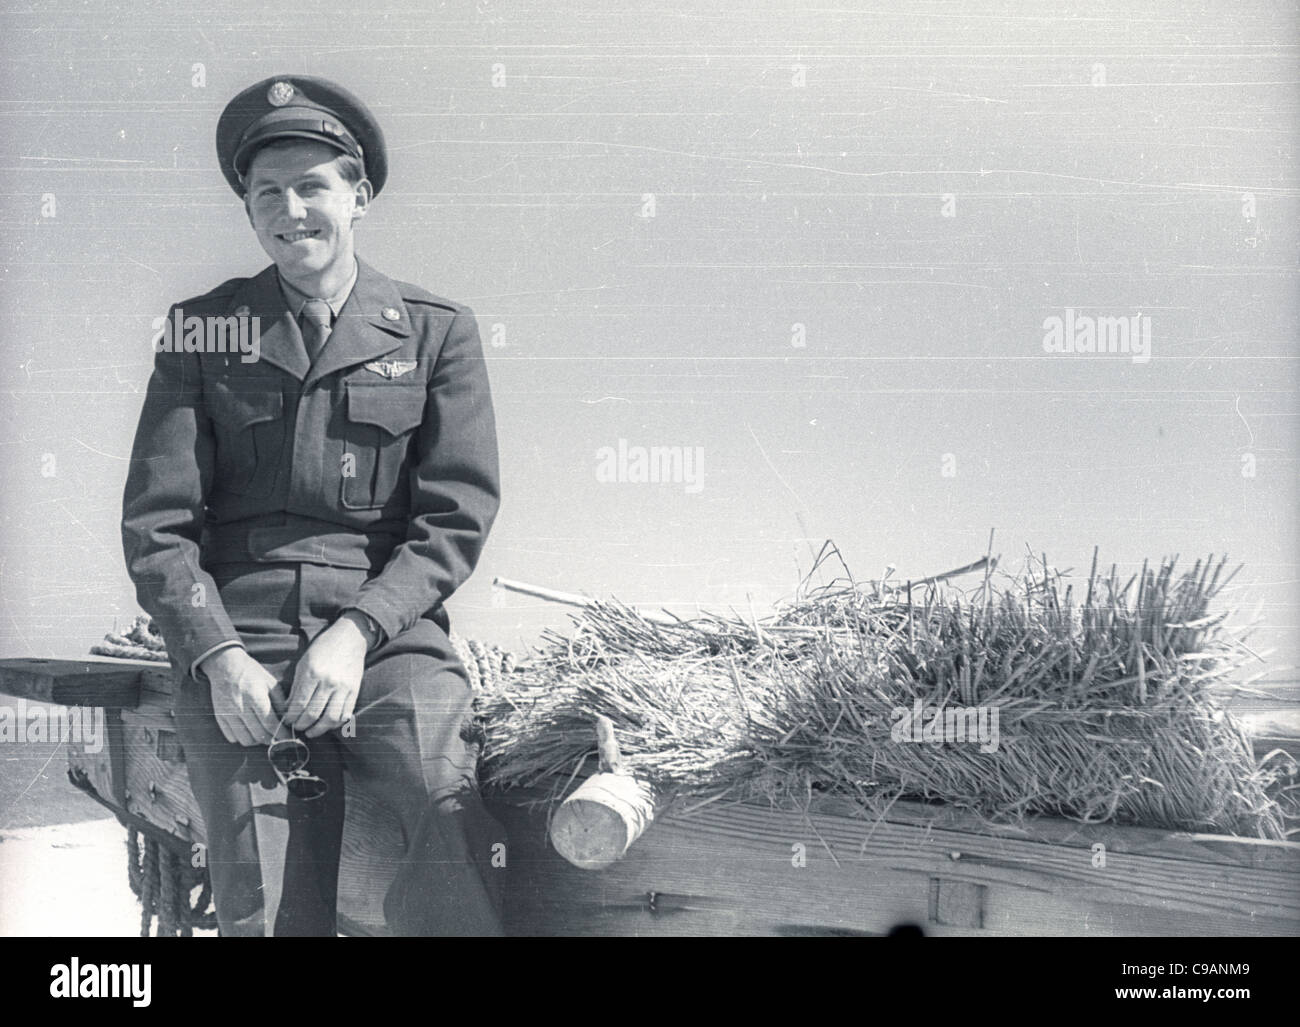 pilot crew member air force Itazuke Air Base, Japan during the Korean War.  Stock Photo